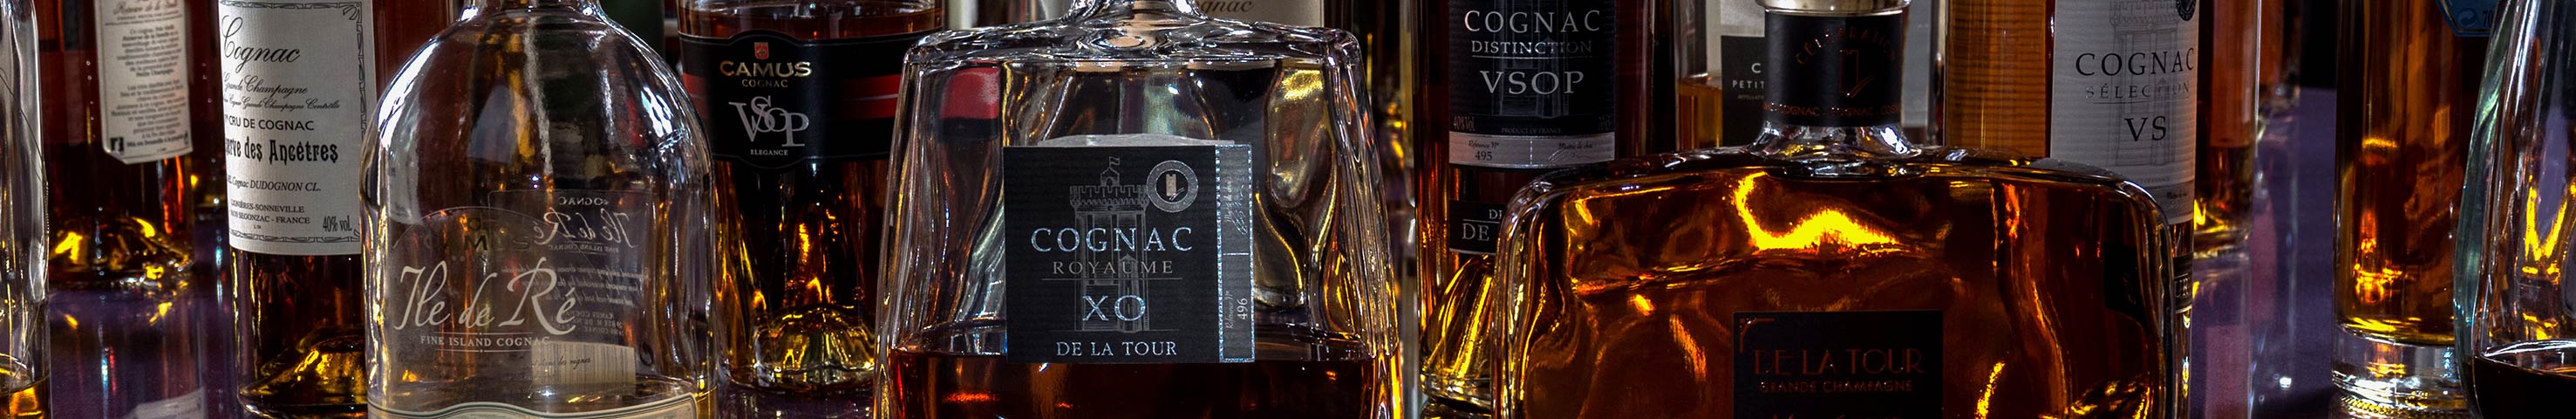 Table de Cognac